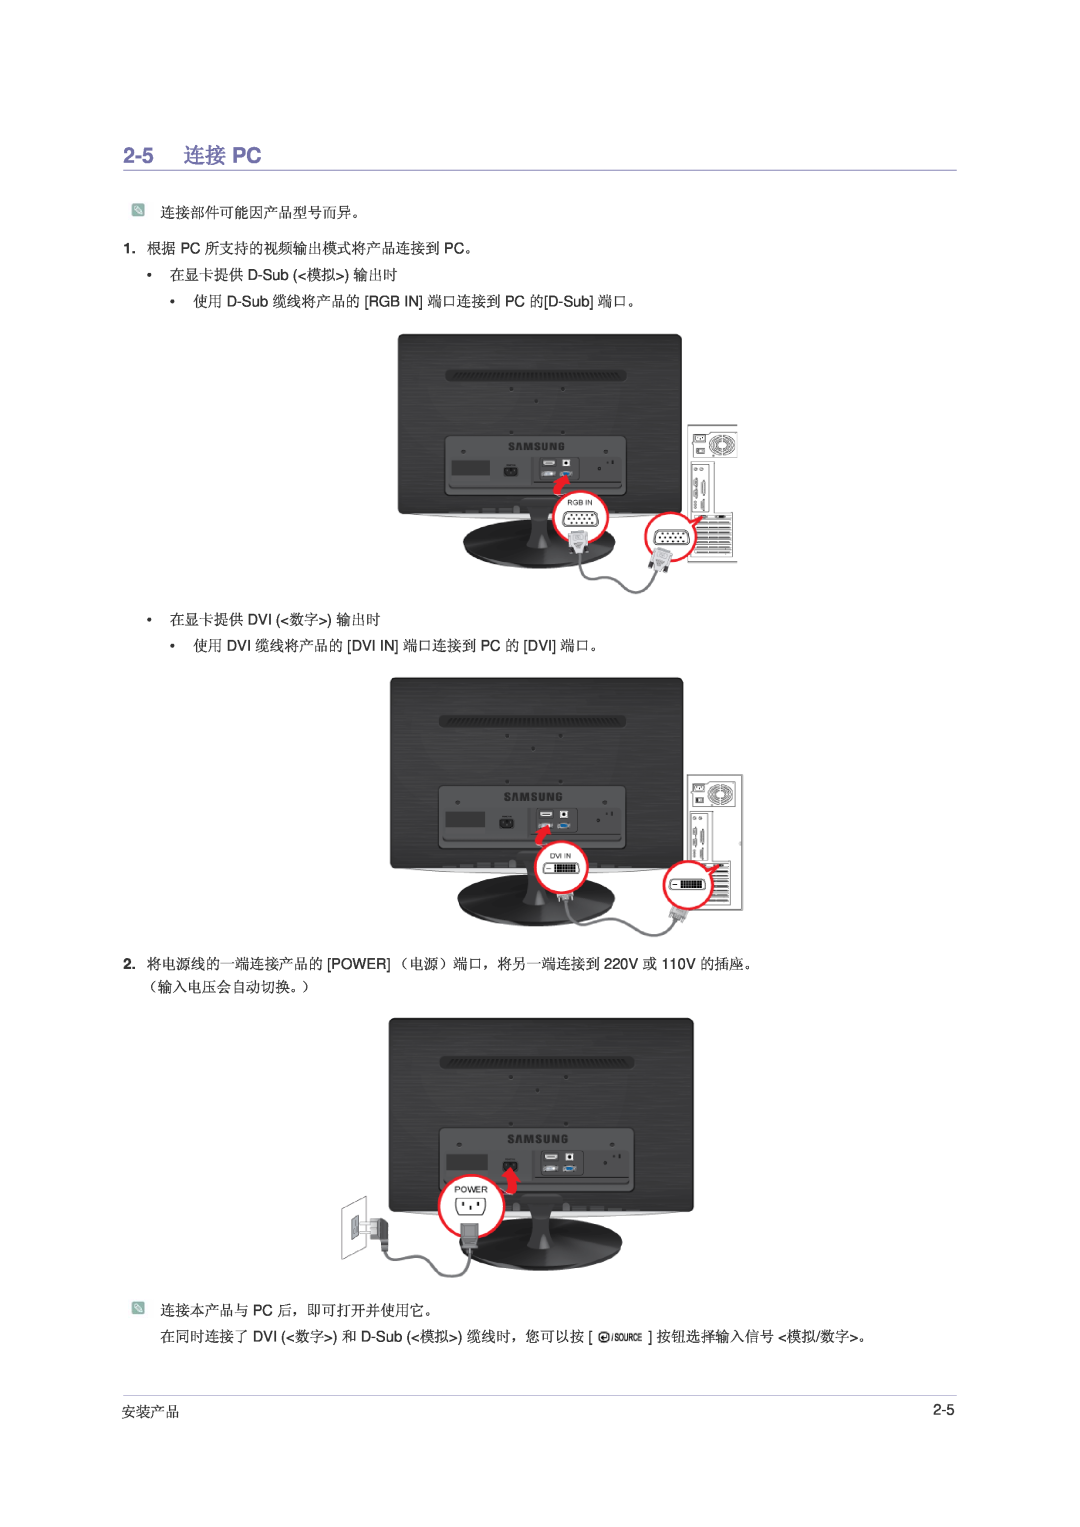 Samsung LS22PUHKFV/ZW, LS24PUHKFV/EN, LS23PUHKF/EN 2-5 连接 PC, 在显卡提供 D-Sub 模拟 输出时 使用 D-Sub 缆线将产品的 RGB IN 端口连接到 PC 的D-Sub 端口。 